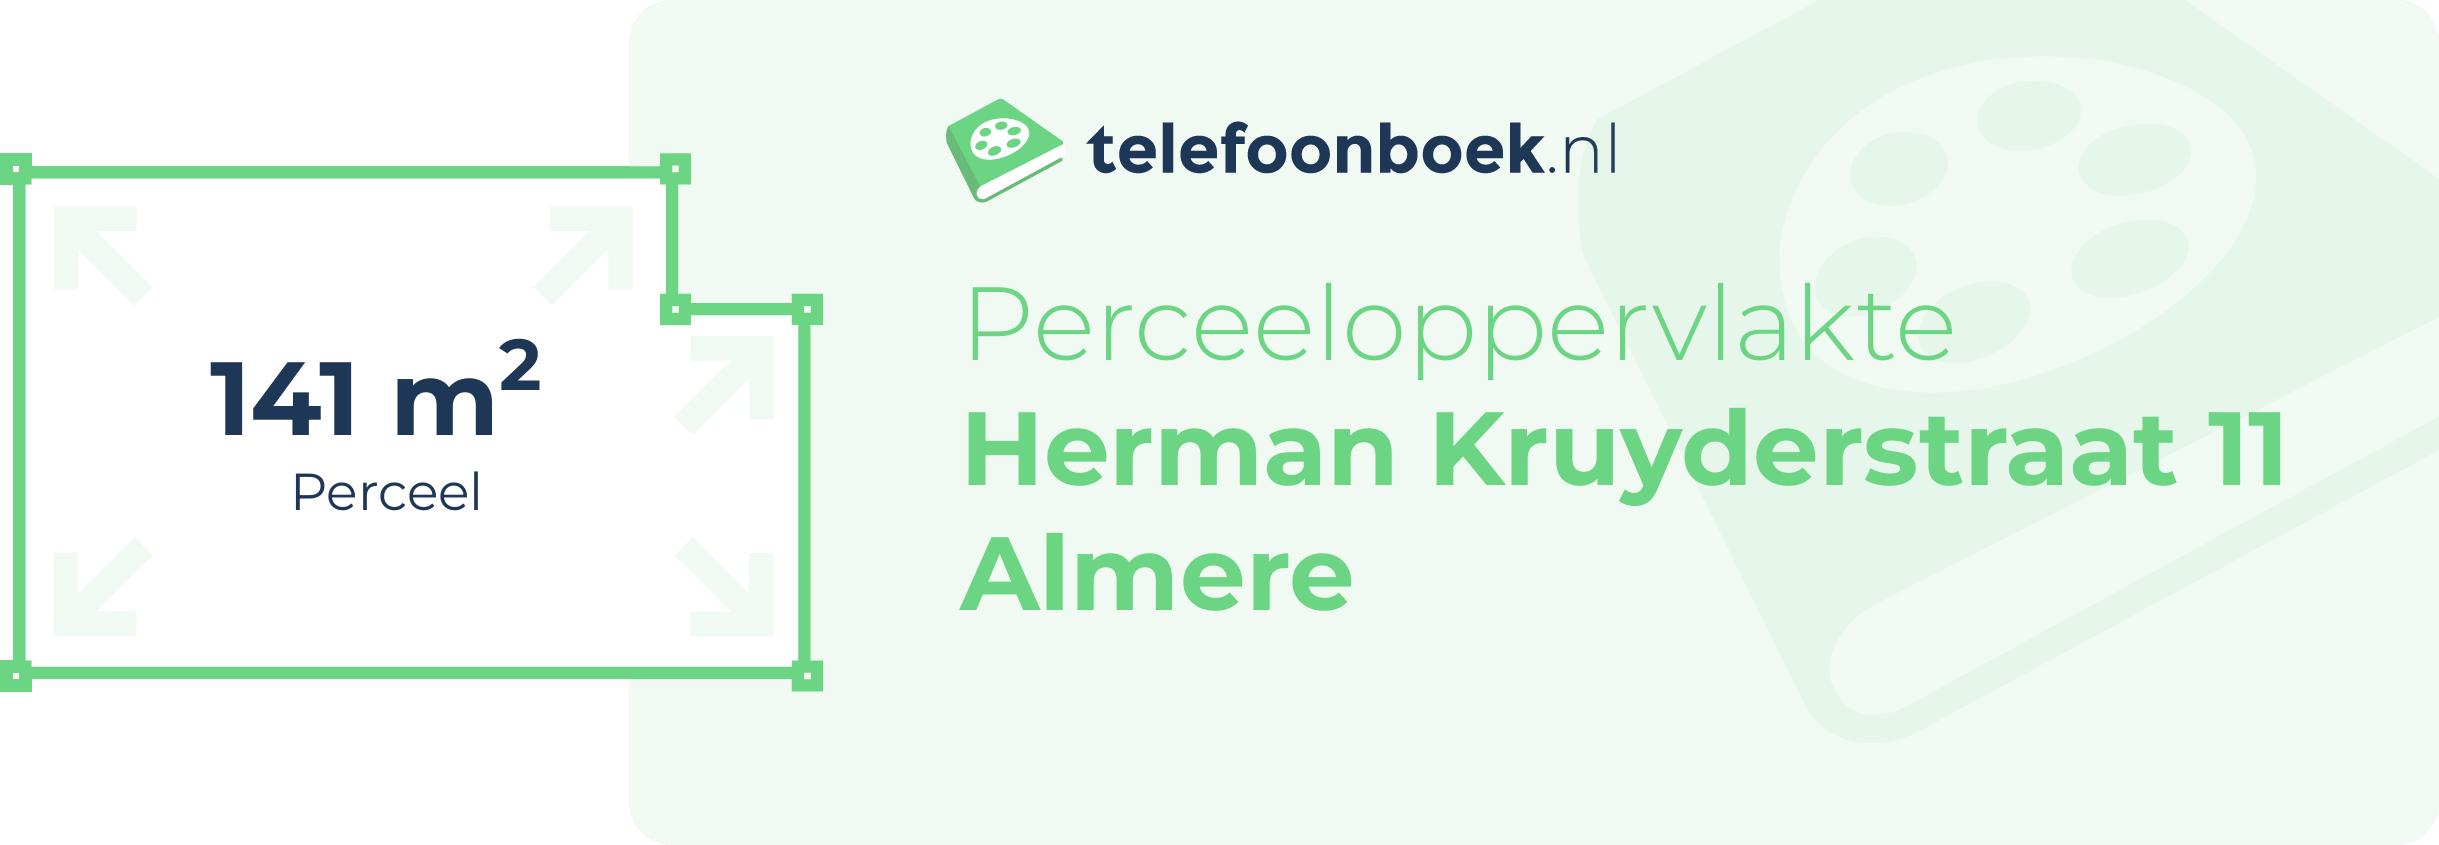 Perceeloppervlakte Herman Kruyderstraat 11 Almere